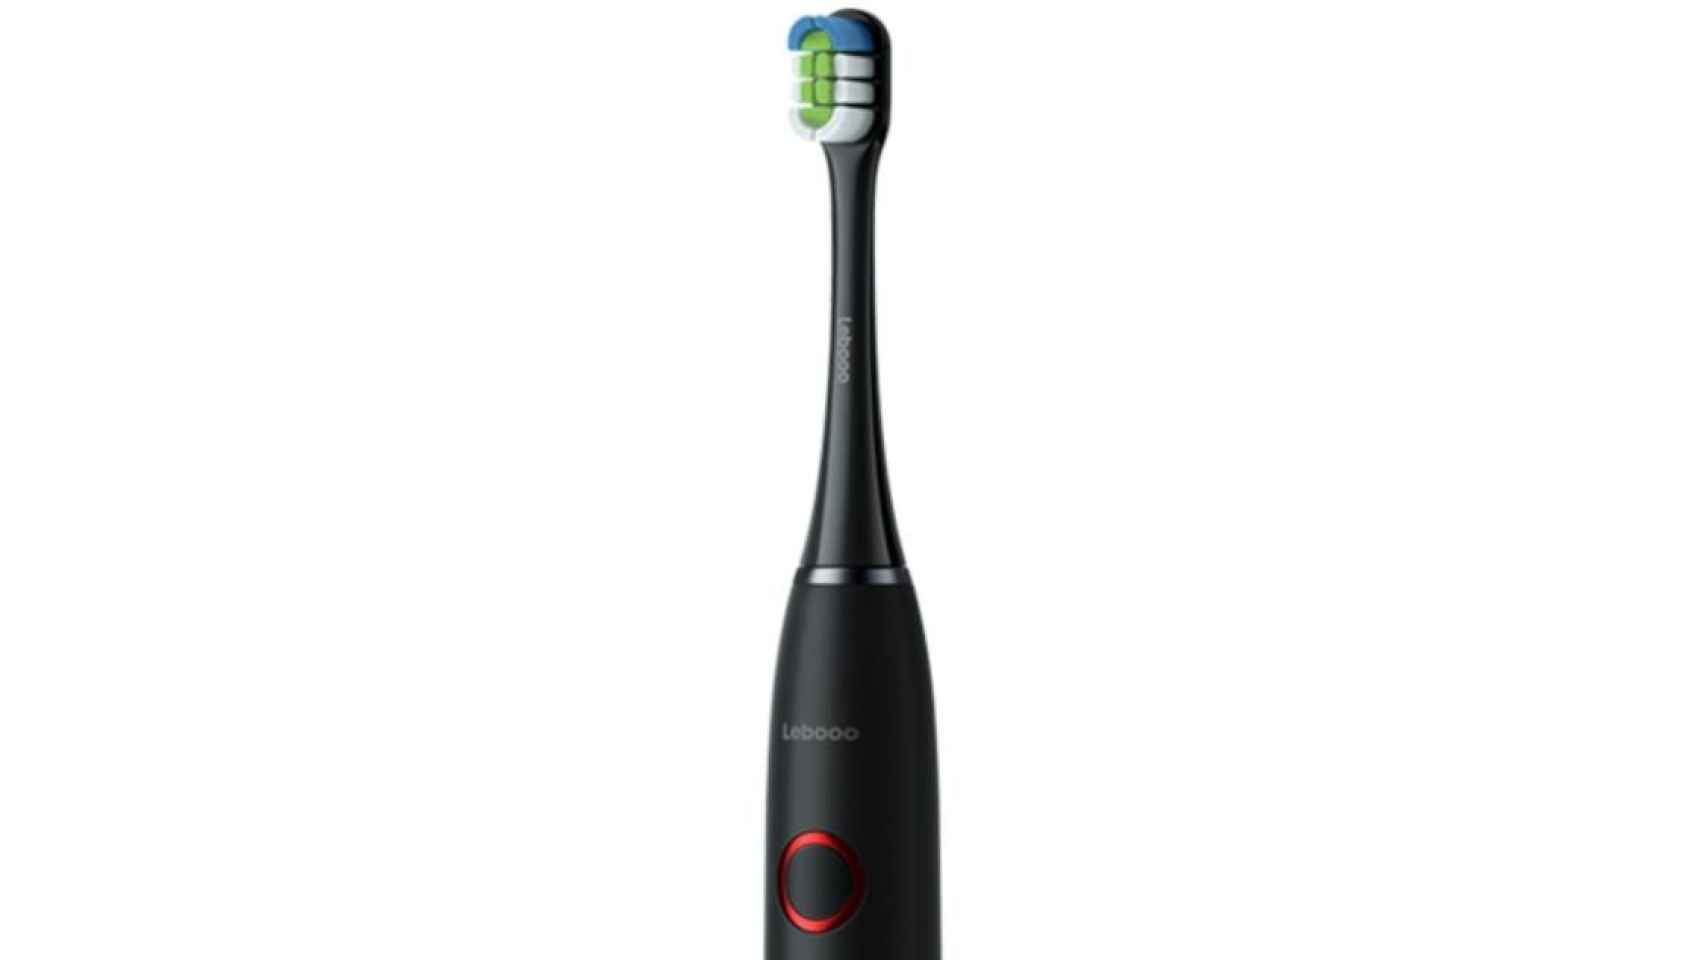 El cepillo de dientes Lebooo Smart Sonic de Huawei